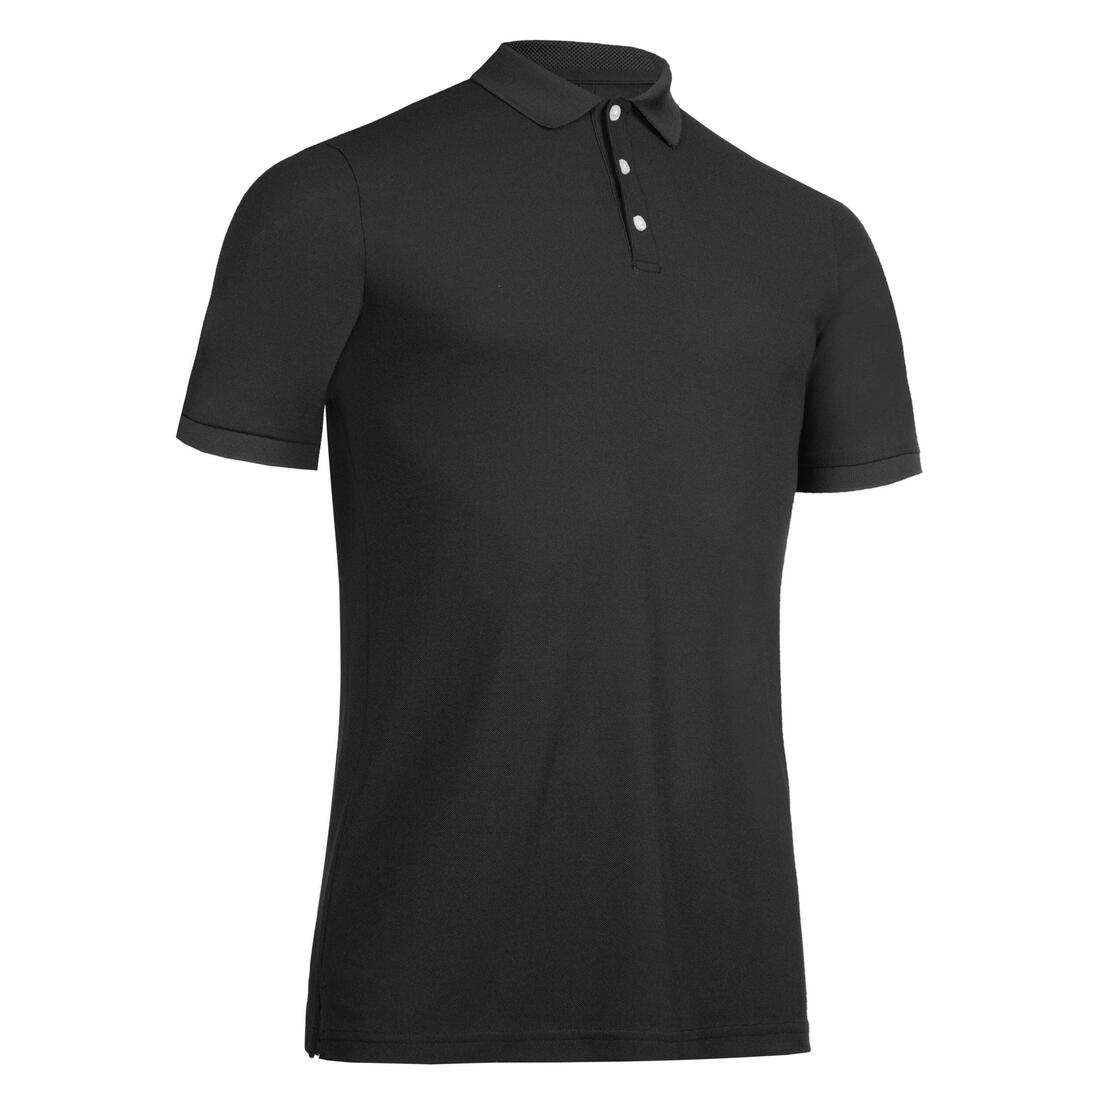 INESIS(イネジス) ゴルフ 半袖ポロシャツ WW500 メンズ